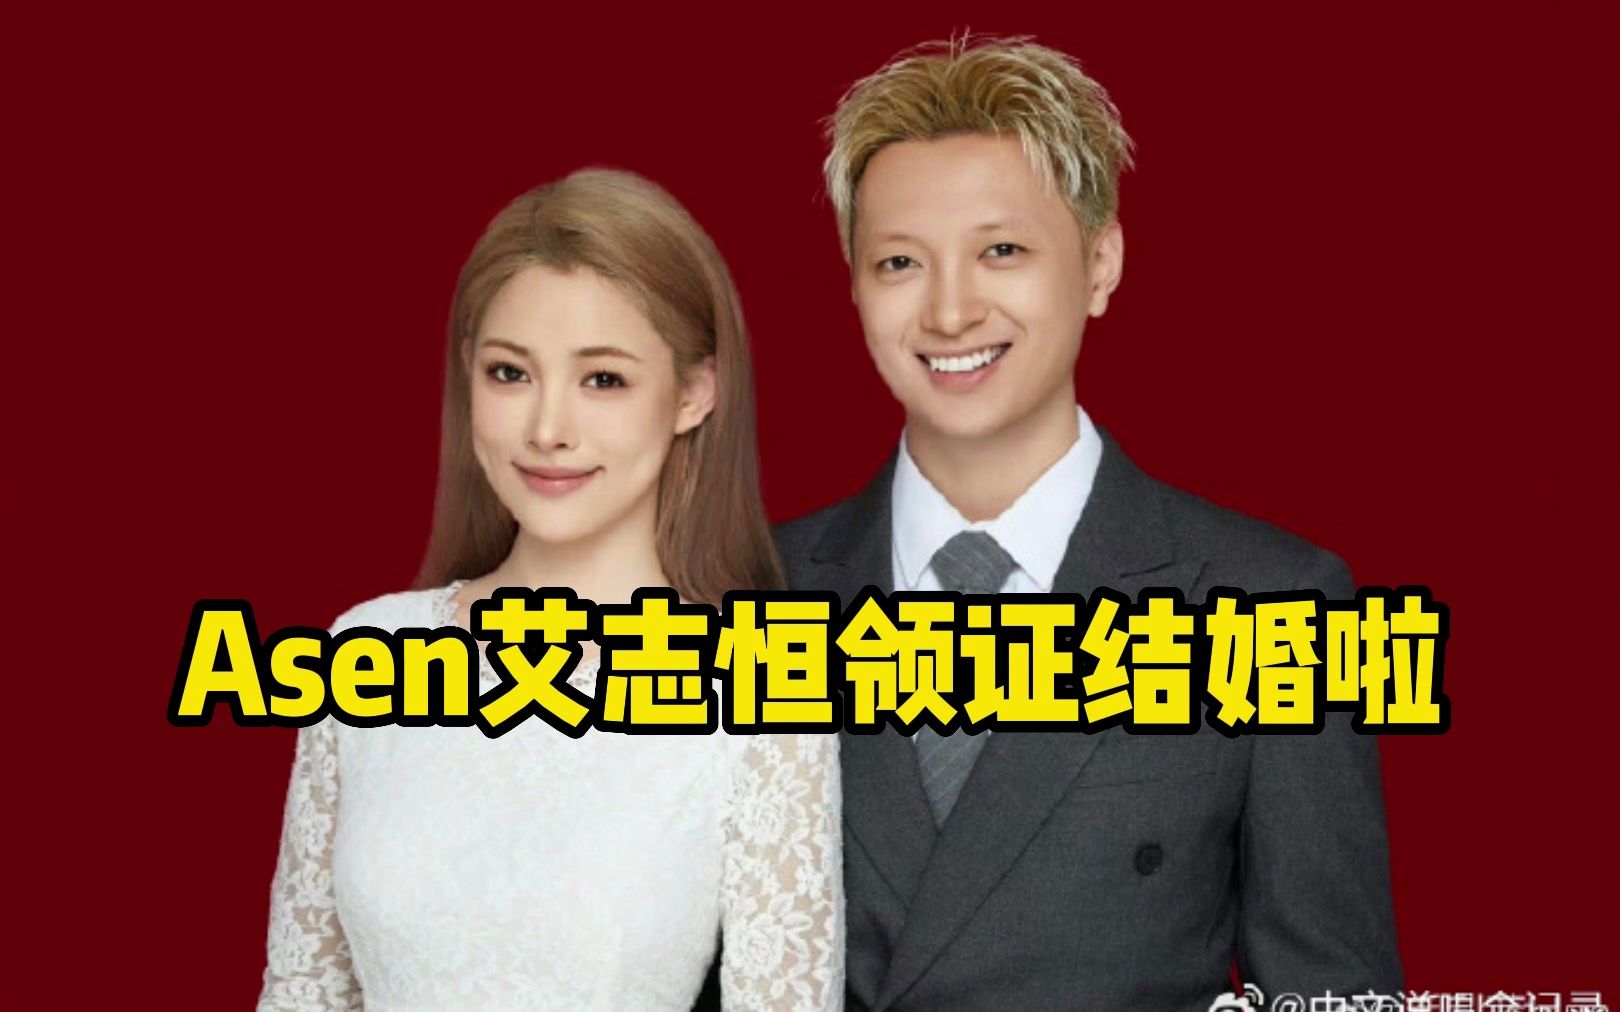 Asen艾志恒虽然写不来情歌，但他与漂亮女友结婚了！